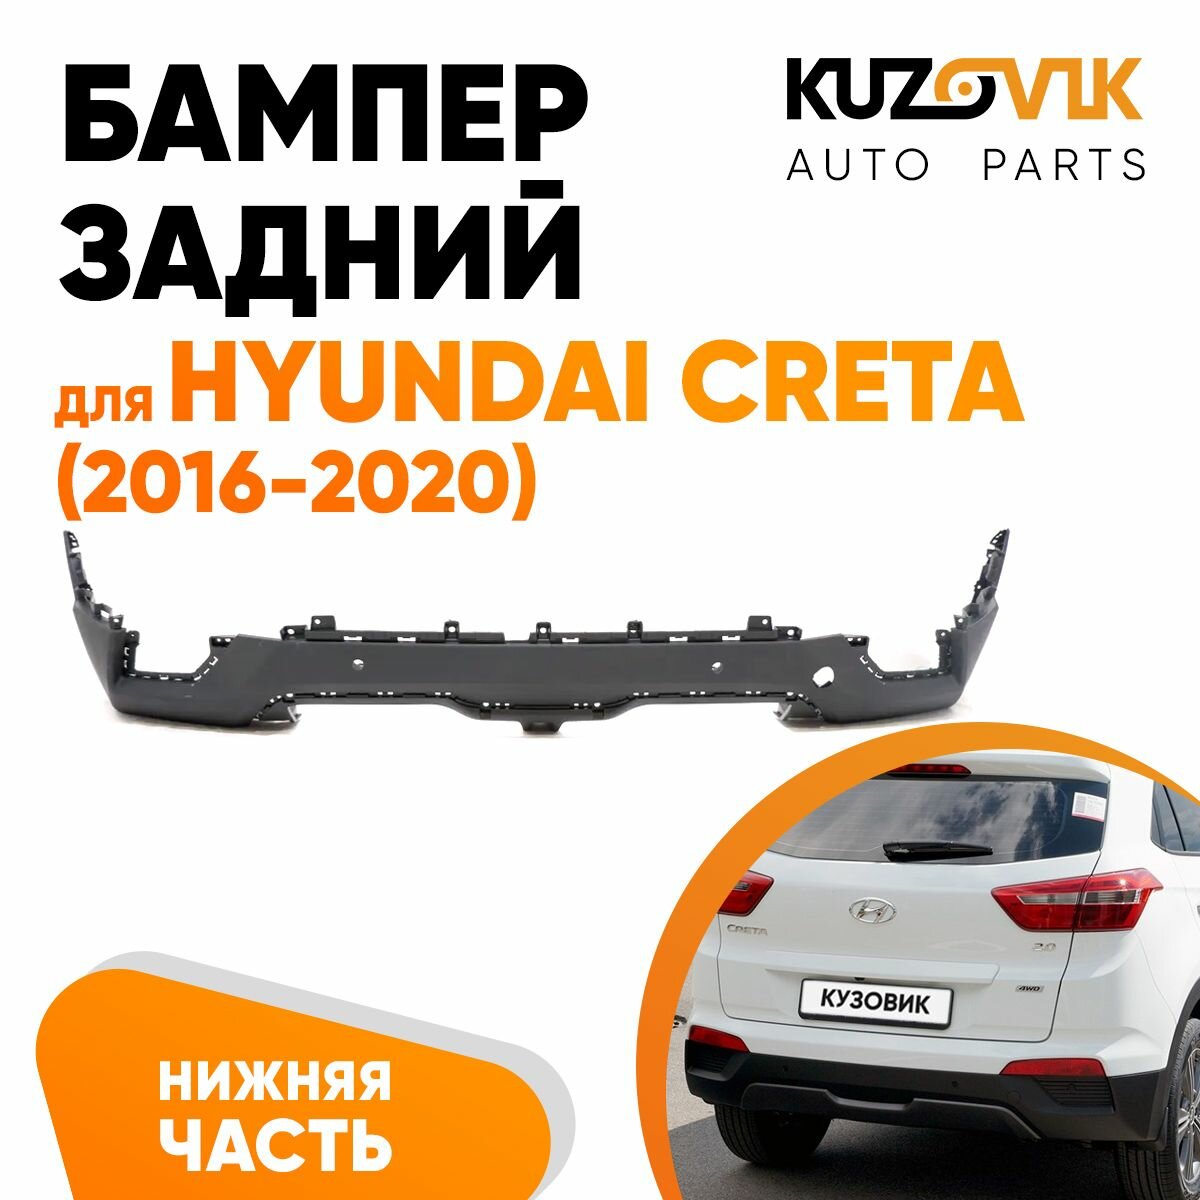 Бампер задний для Хендай Крета Hyundai Creta (2016-2020) нижняя часть